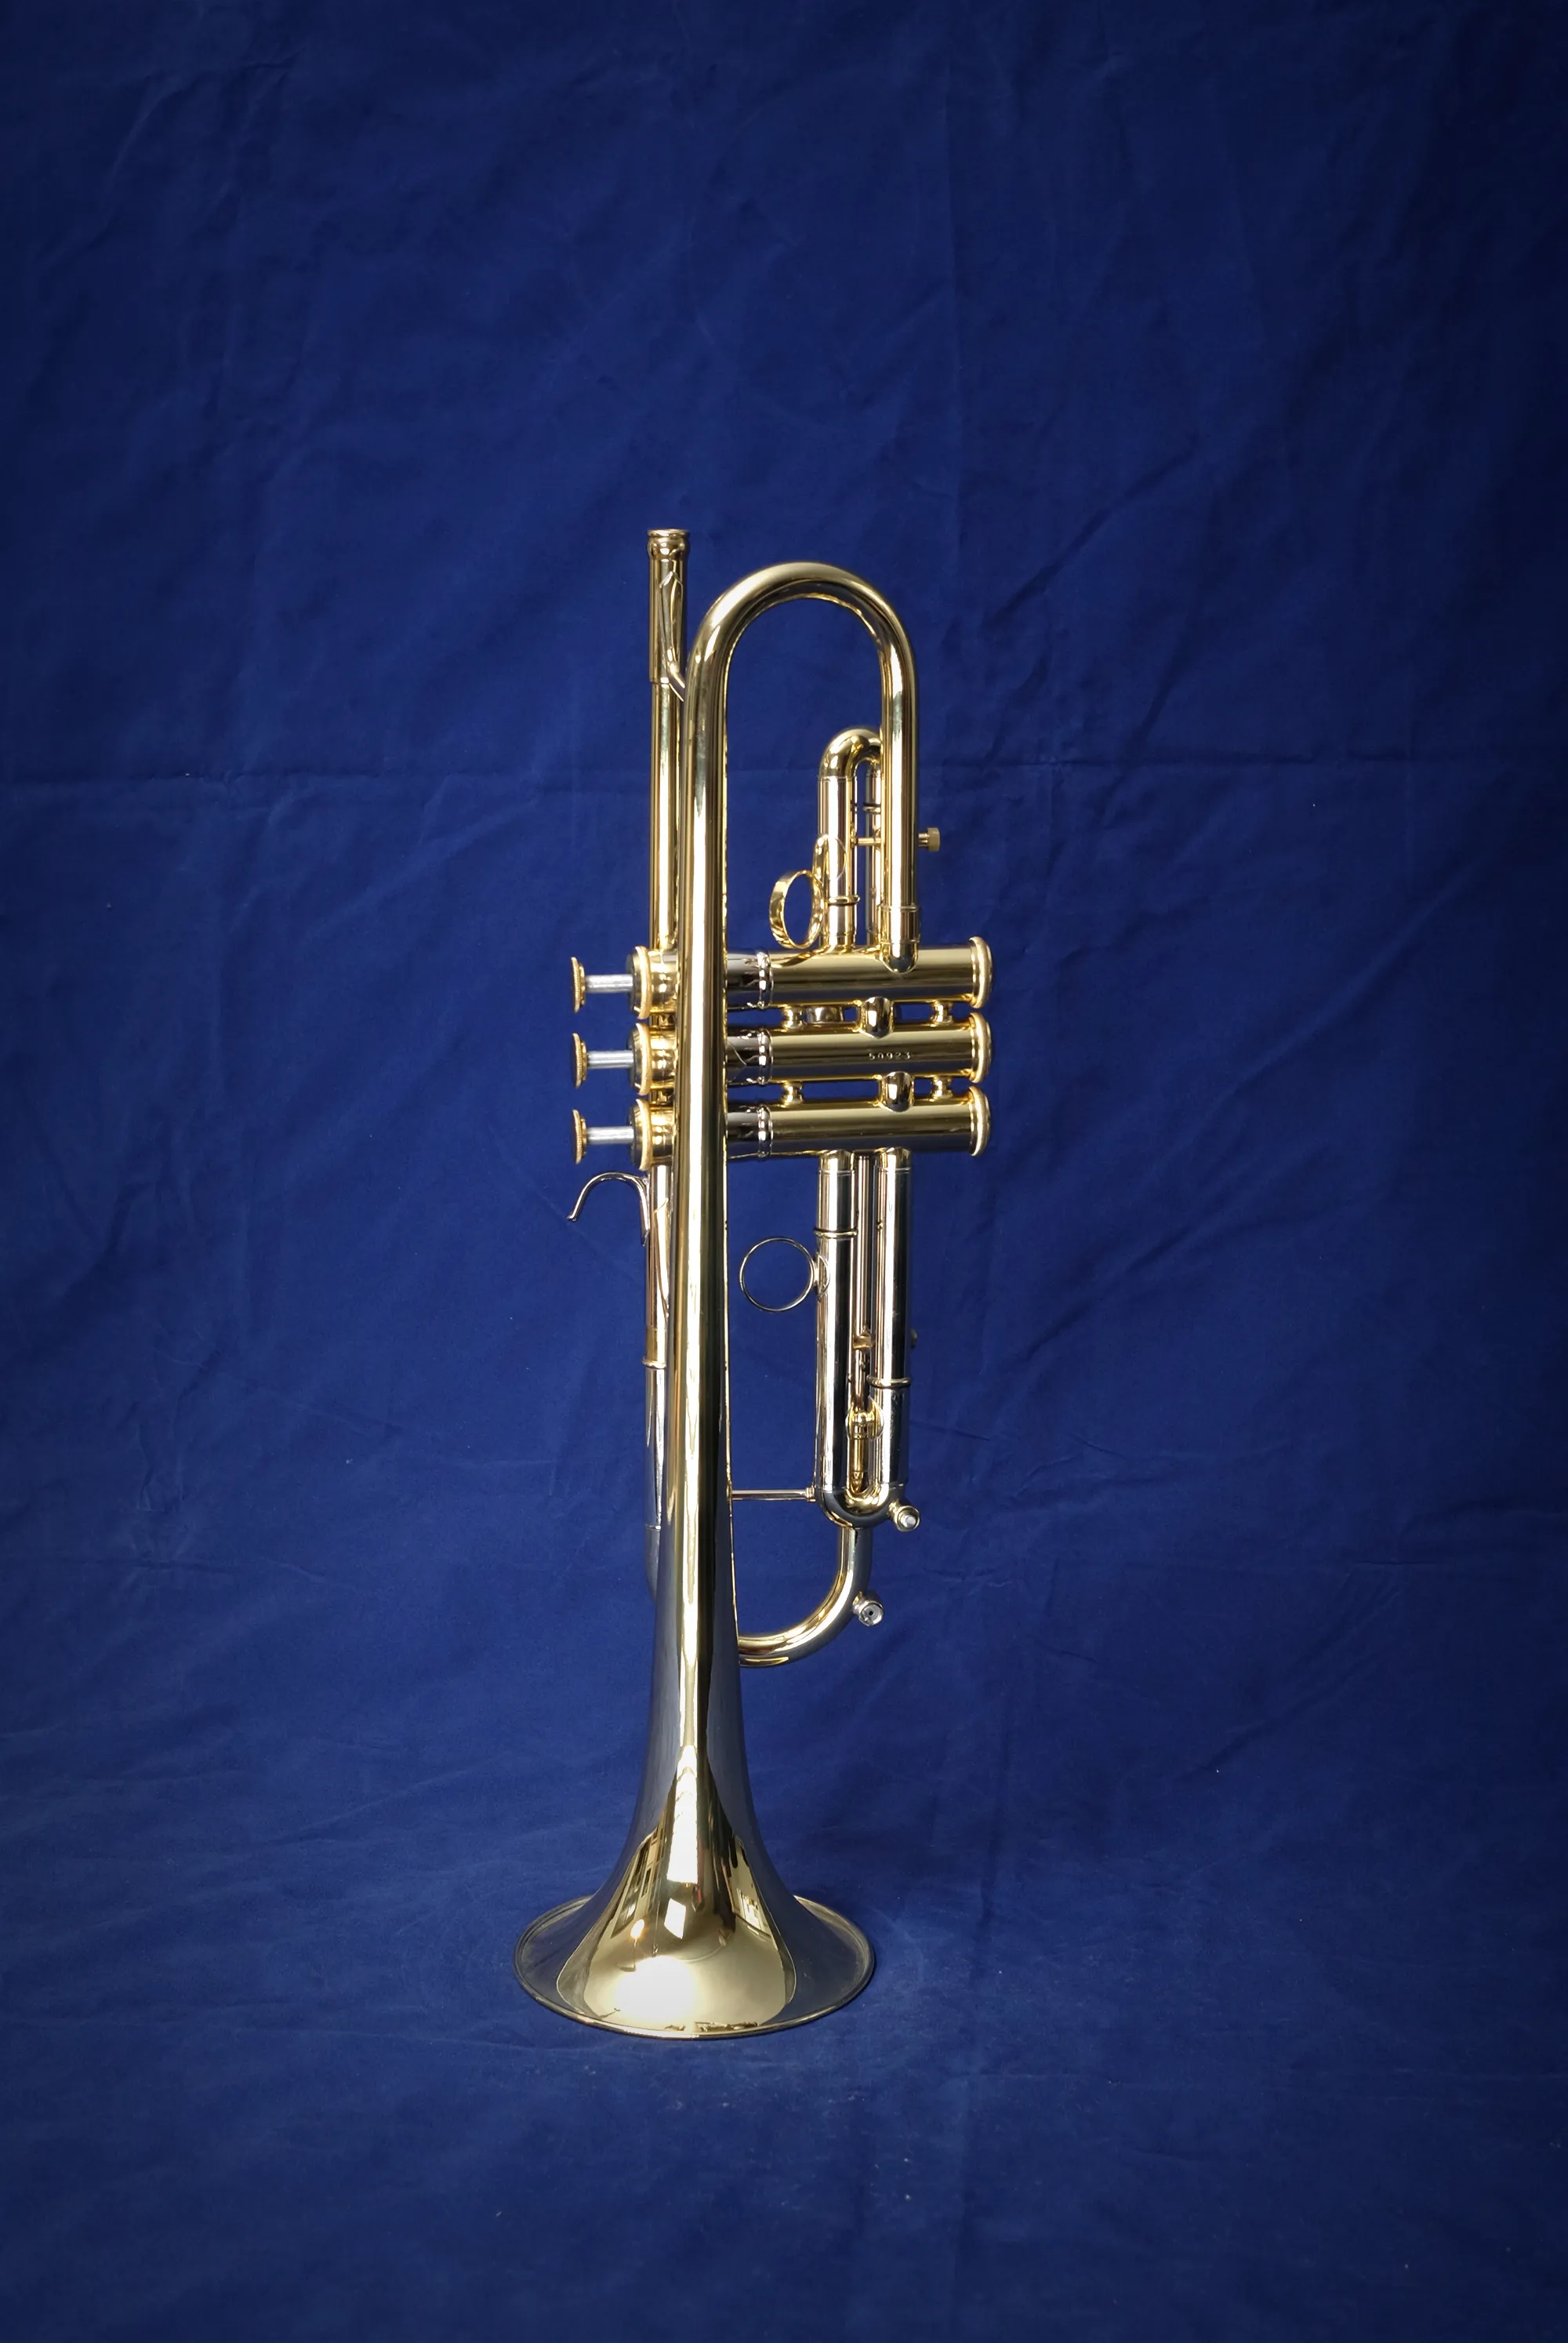 B-trumpet mod. 21 och 29